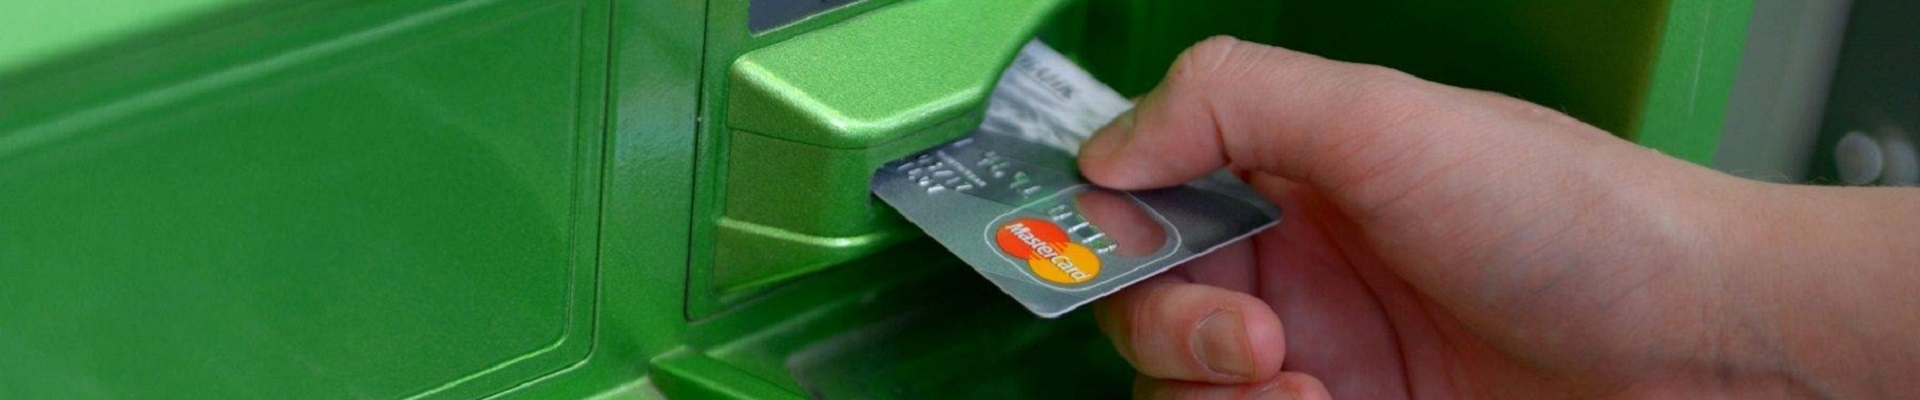 Быть клиентом Сбербанка становится все тяжелее: ужесточения условий денежных переводов через банкоматы